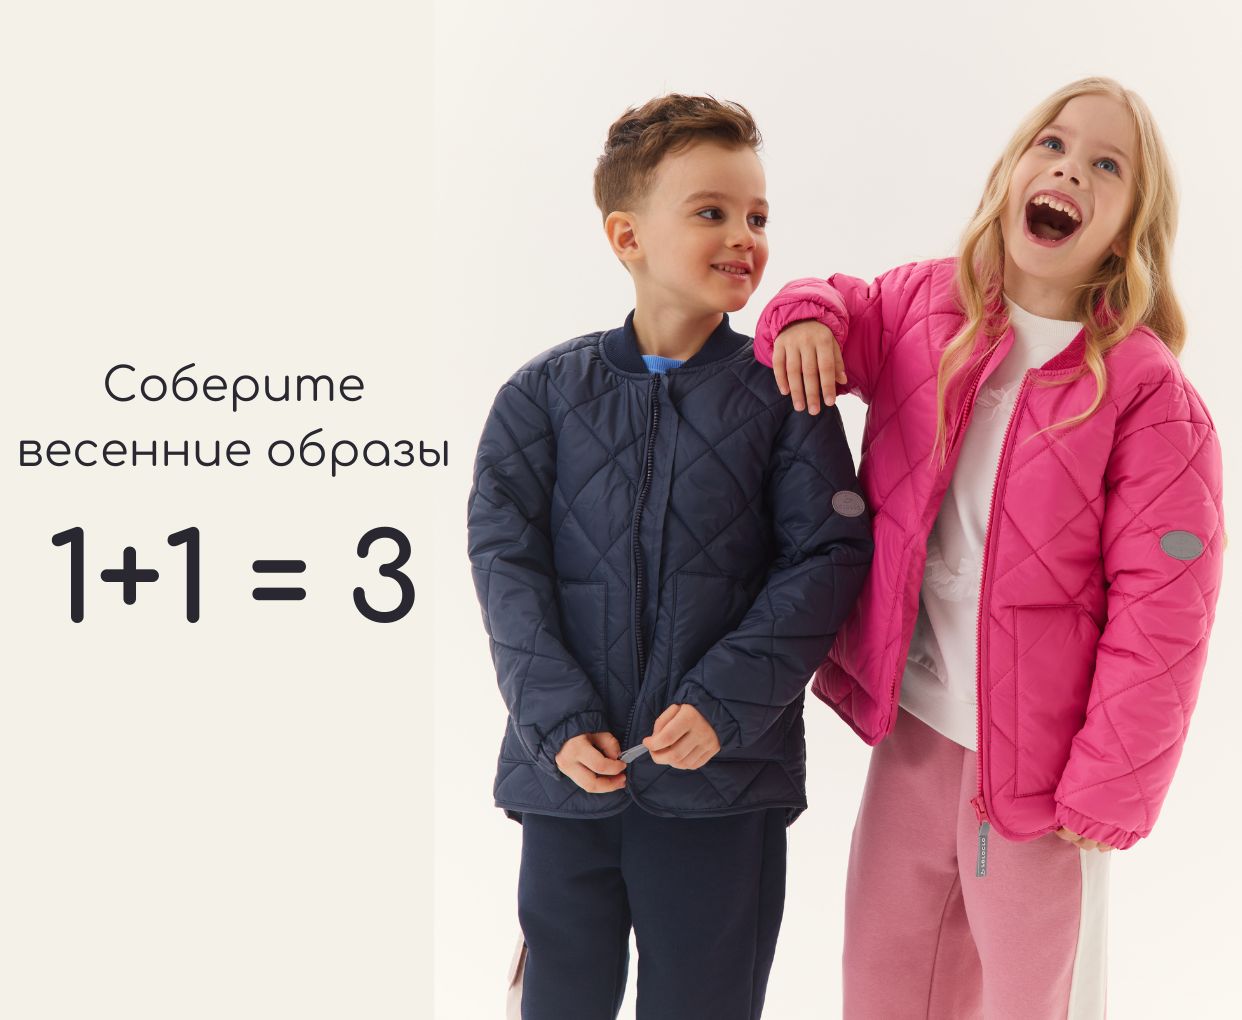 Детская брендовая одежда от интернет магазина 